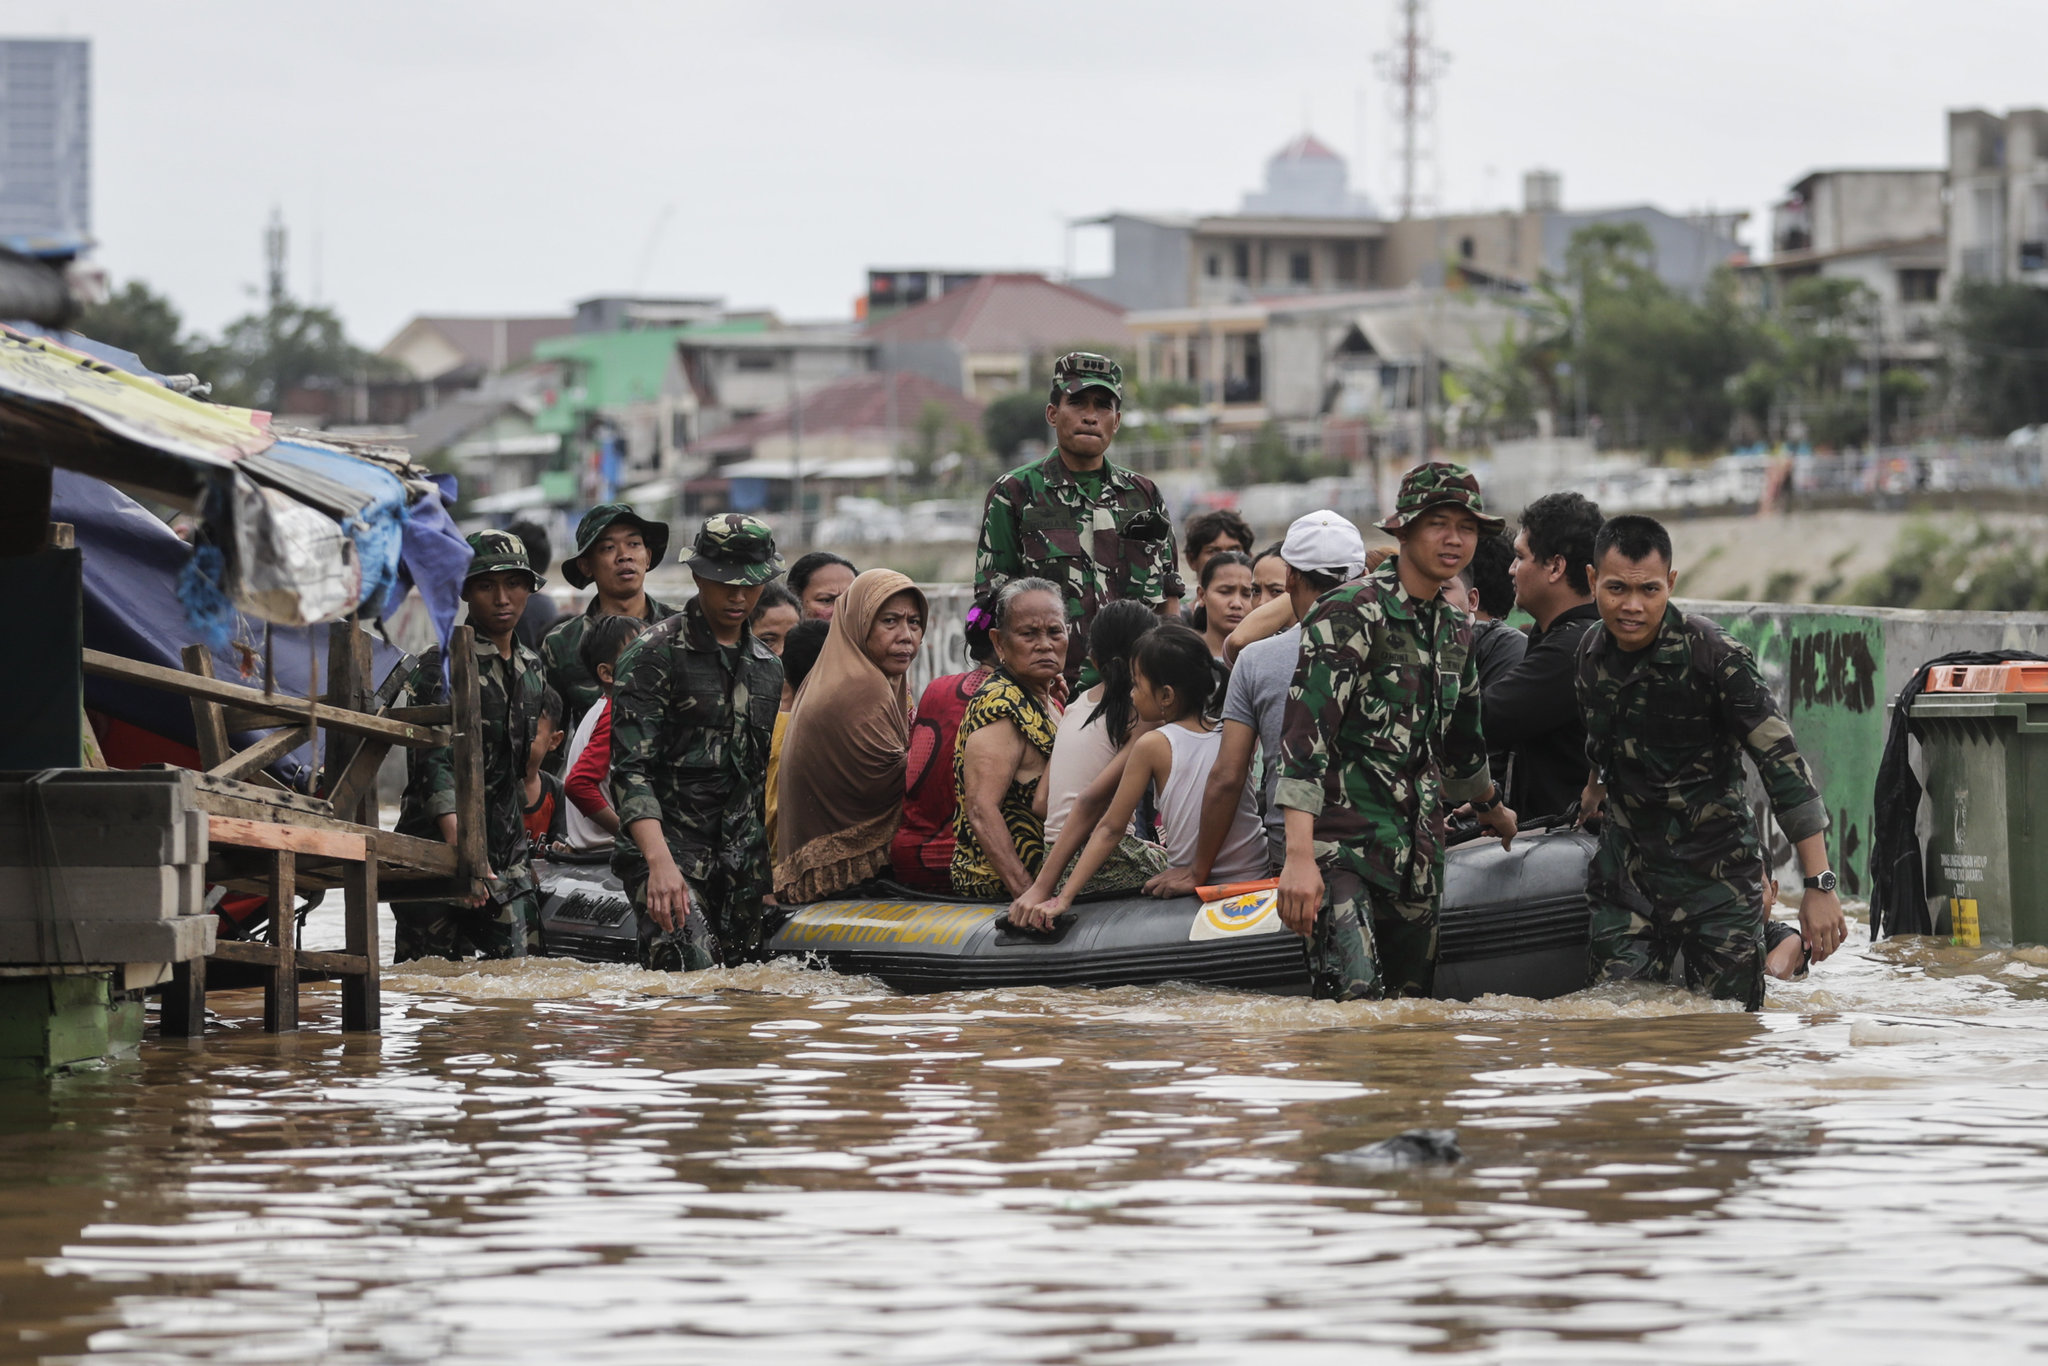 Indonesia landslides and floods kill 75 including dozens missing